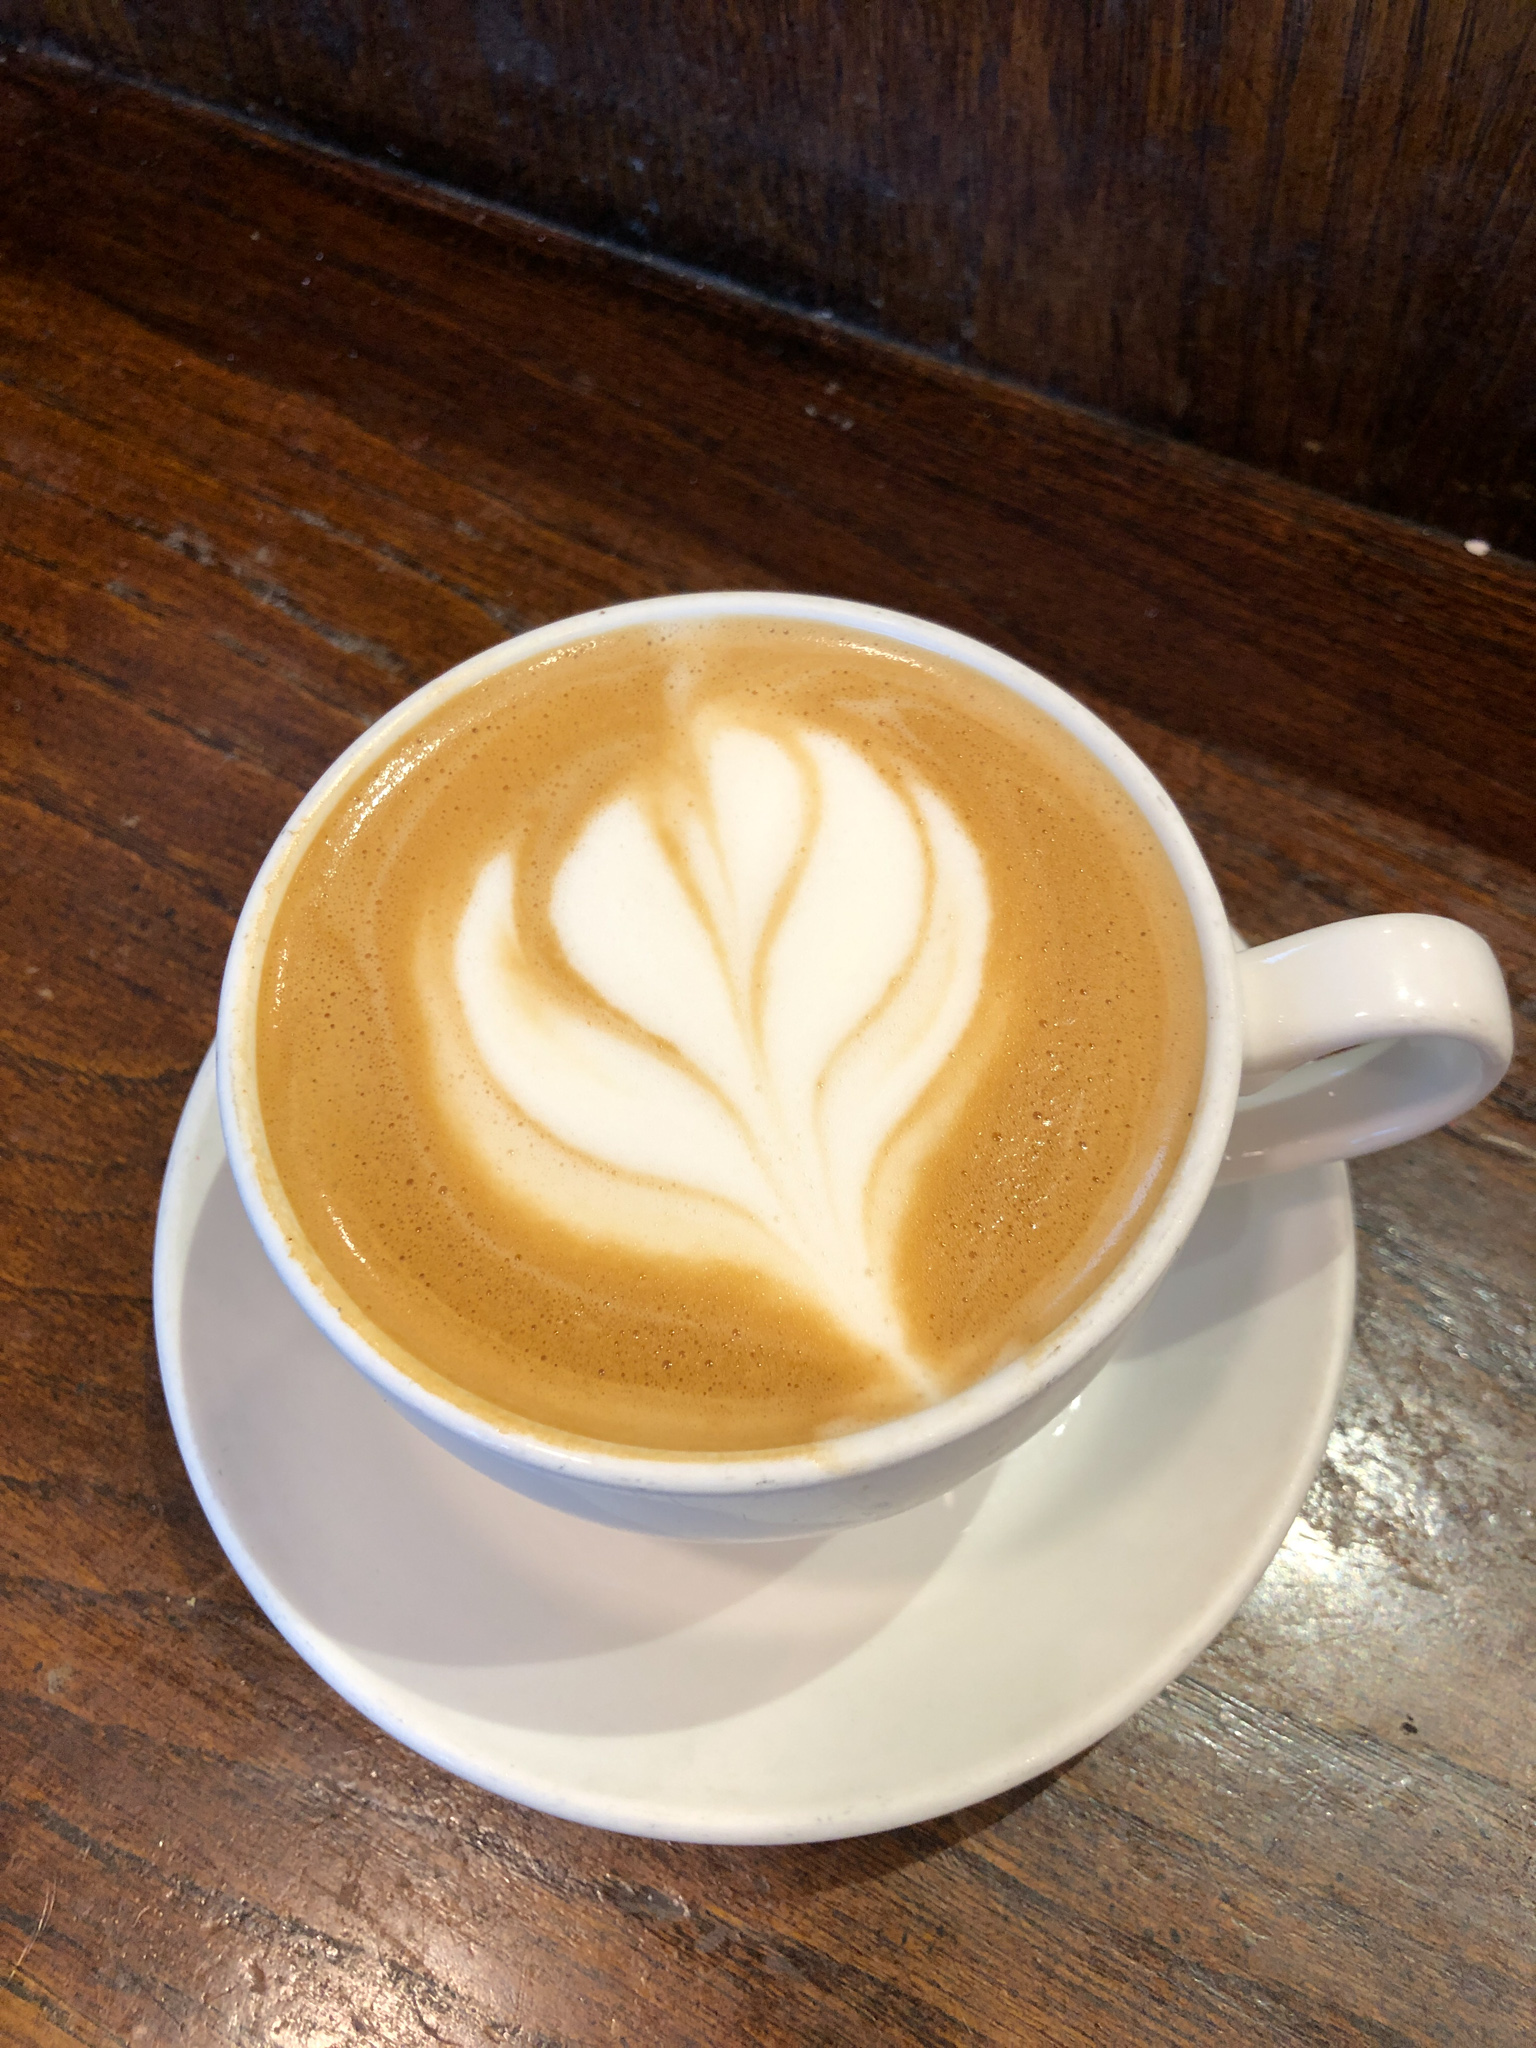 latte with foam art.